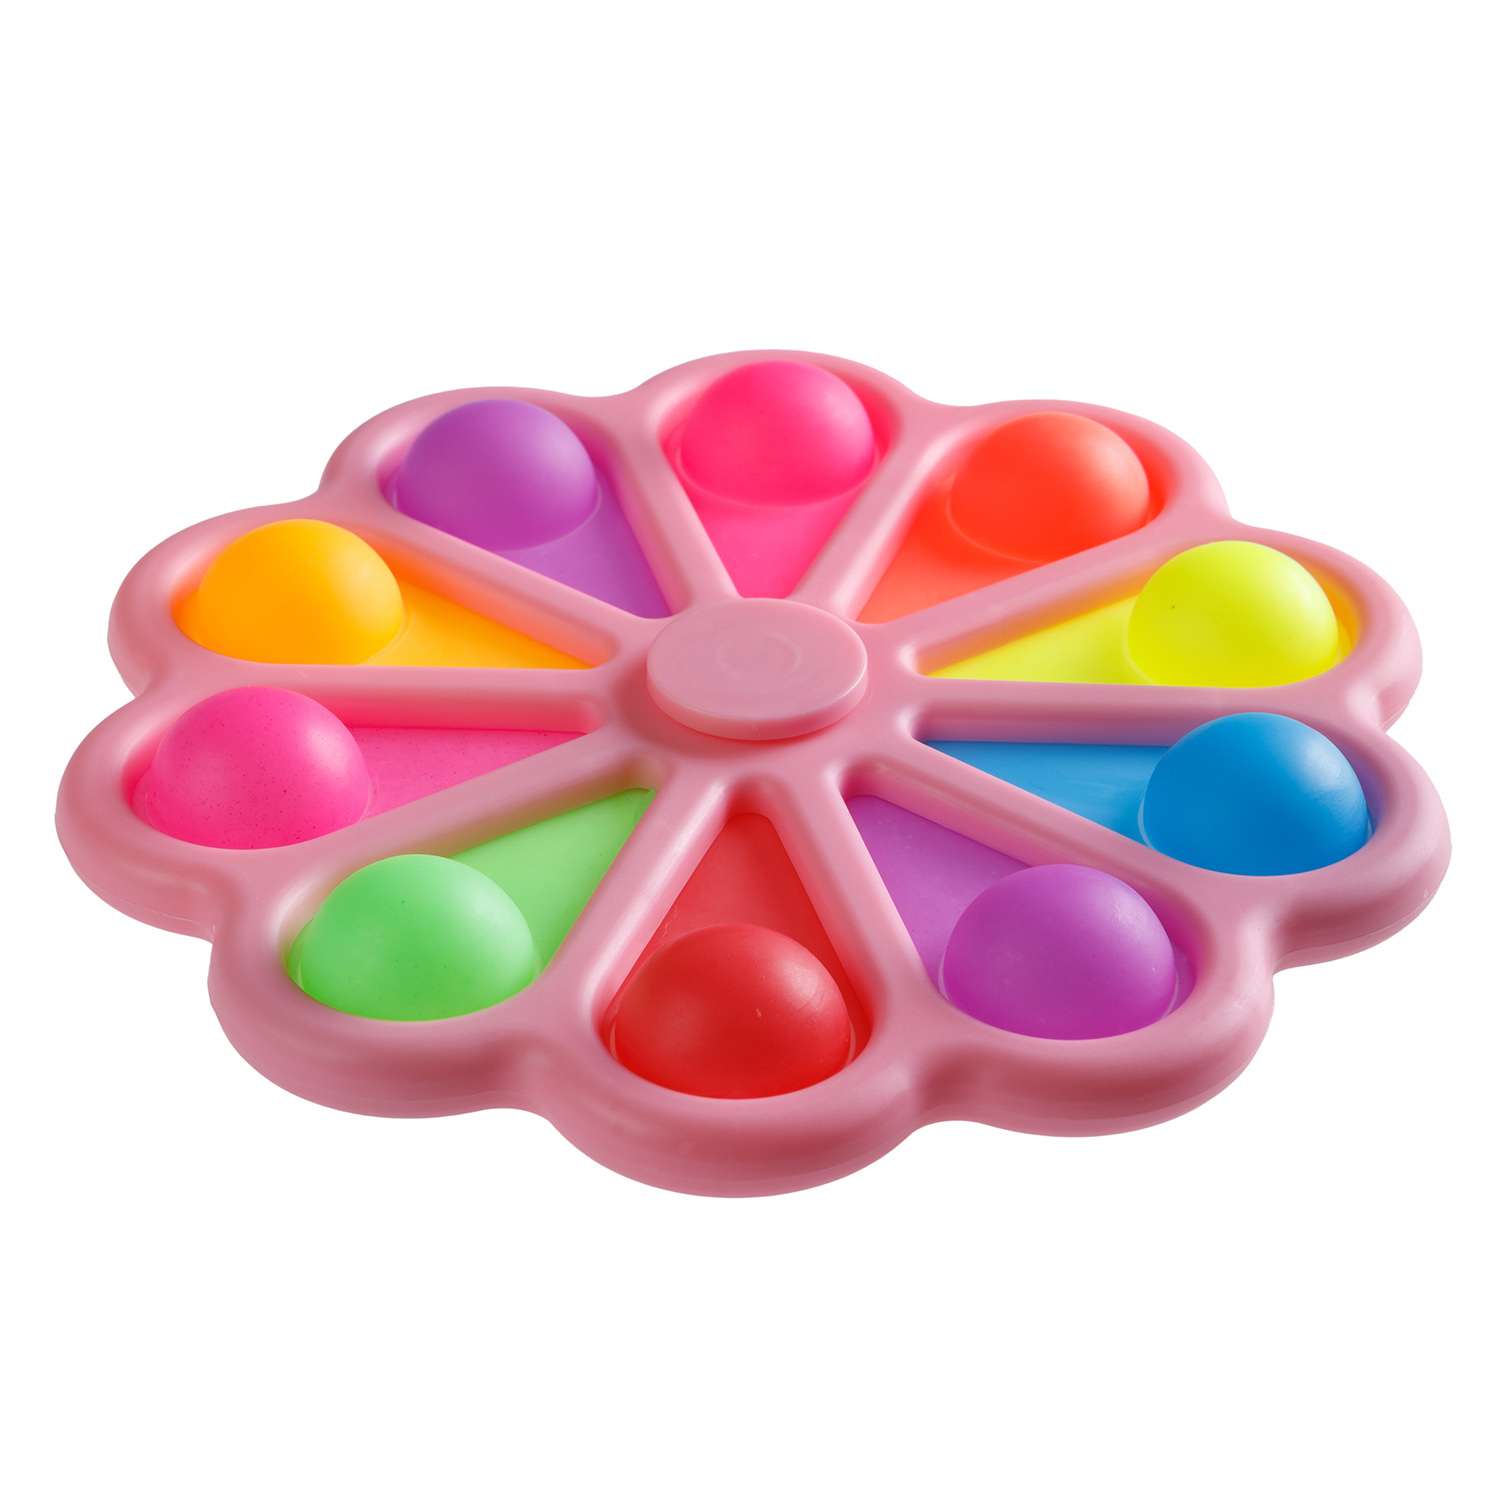 Игрушка-антистресс BABY STYLE сенсорная залипательные пузырьки Цветок спиннер мультиколор розовый - фото 1